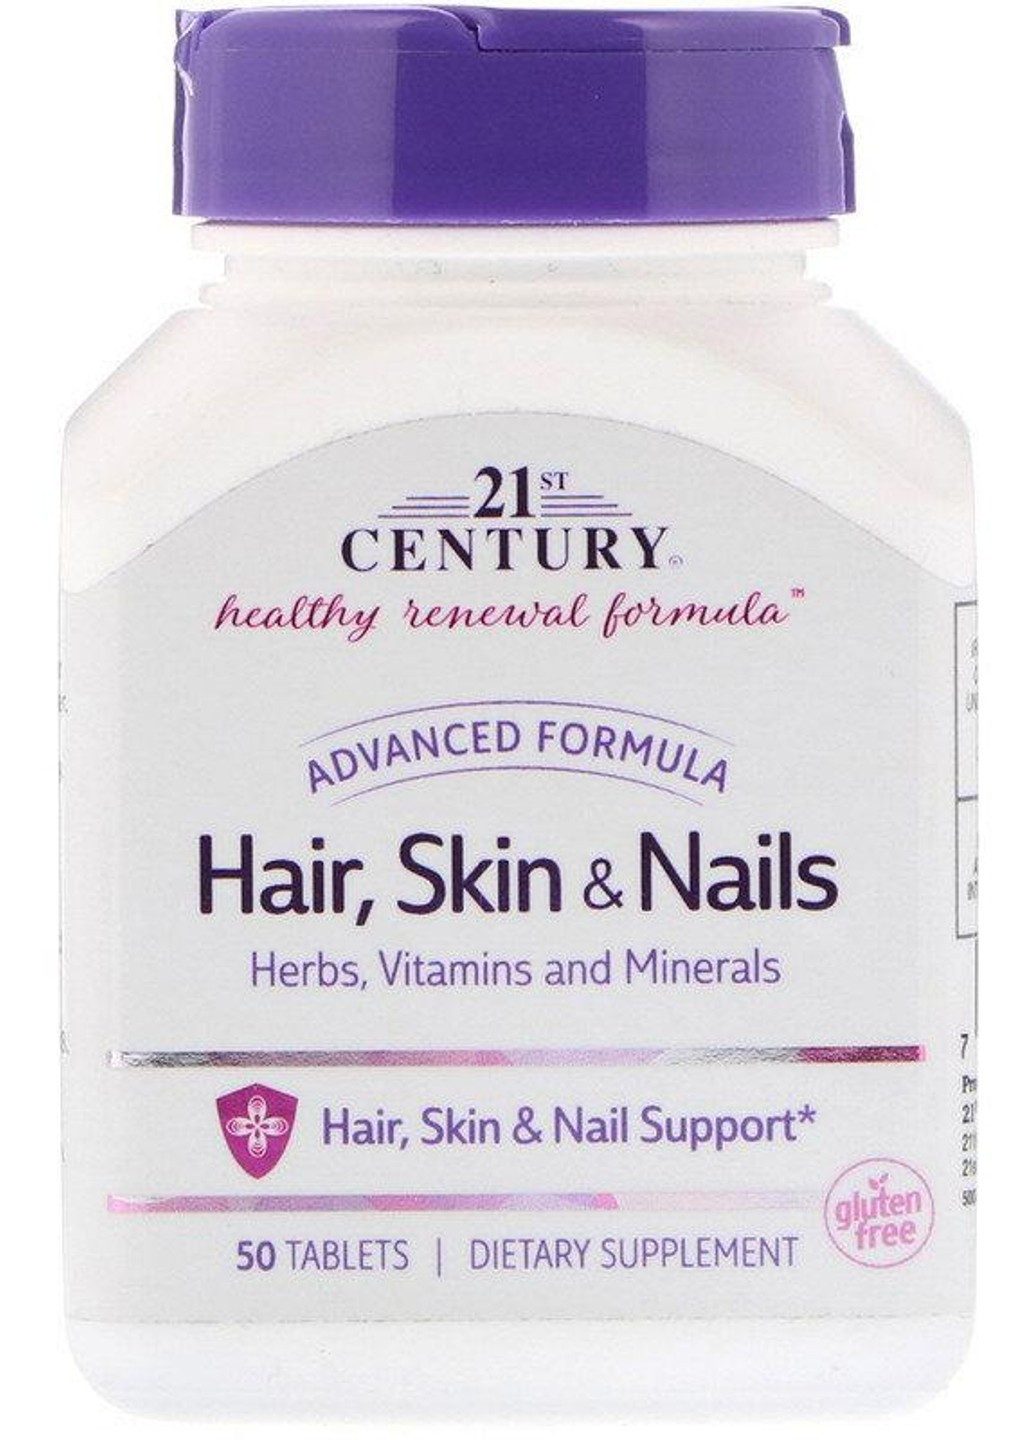 Витамины для волос, кожи и ногтей Hair, Skin & Nalis (50 таб) 21 век центури 21st Century (255408674)